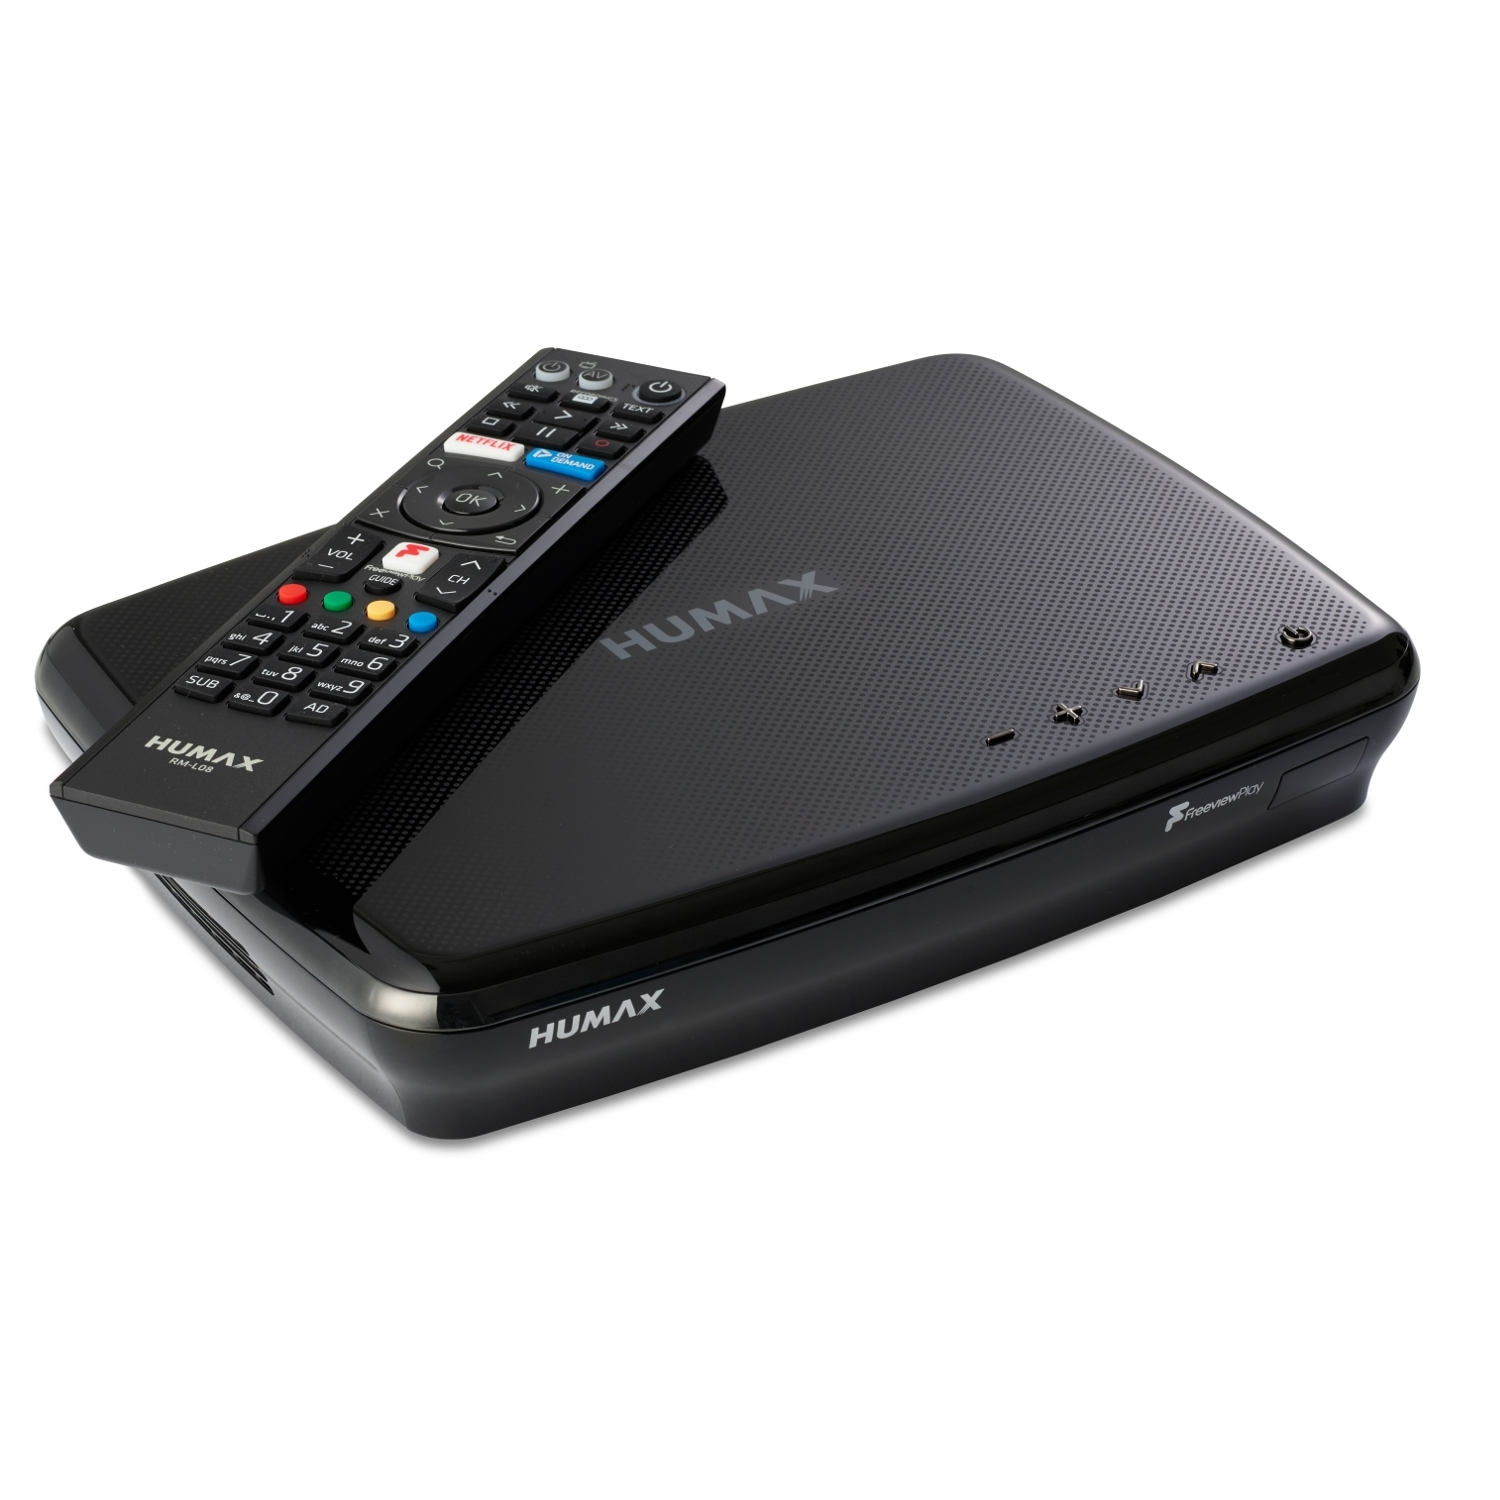 Humax FVP5000T 1TB Digital Video Recorder - 1 TB HDD-Freeview-HD-Smart- Black - 4